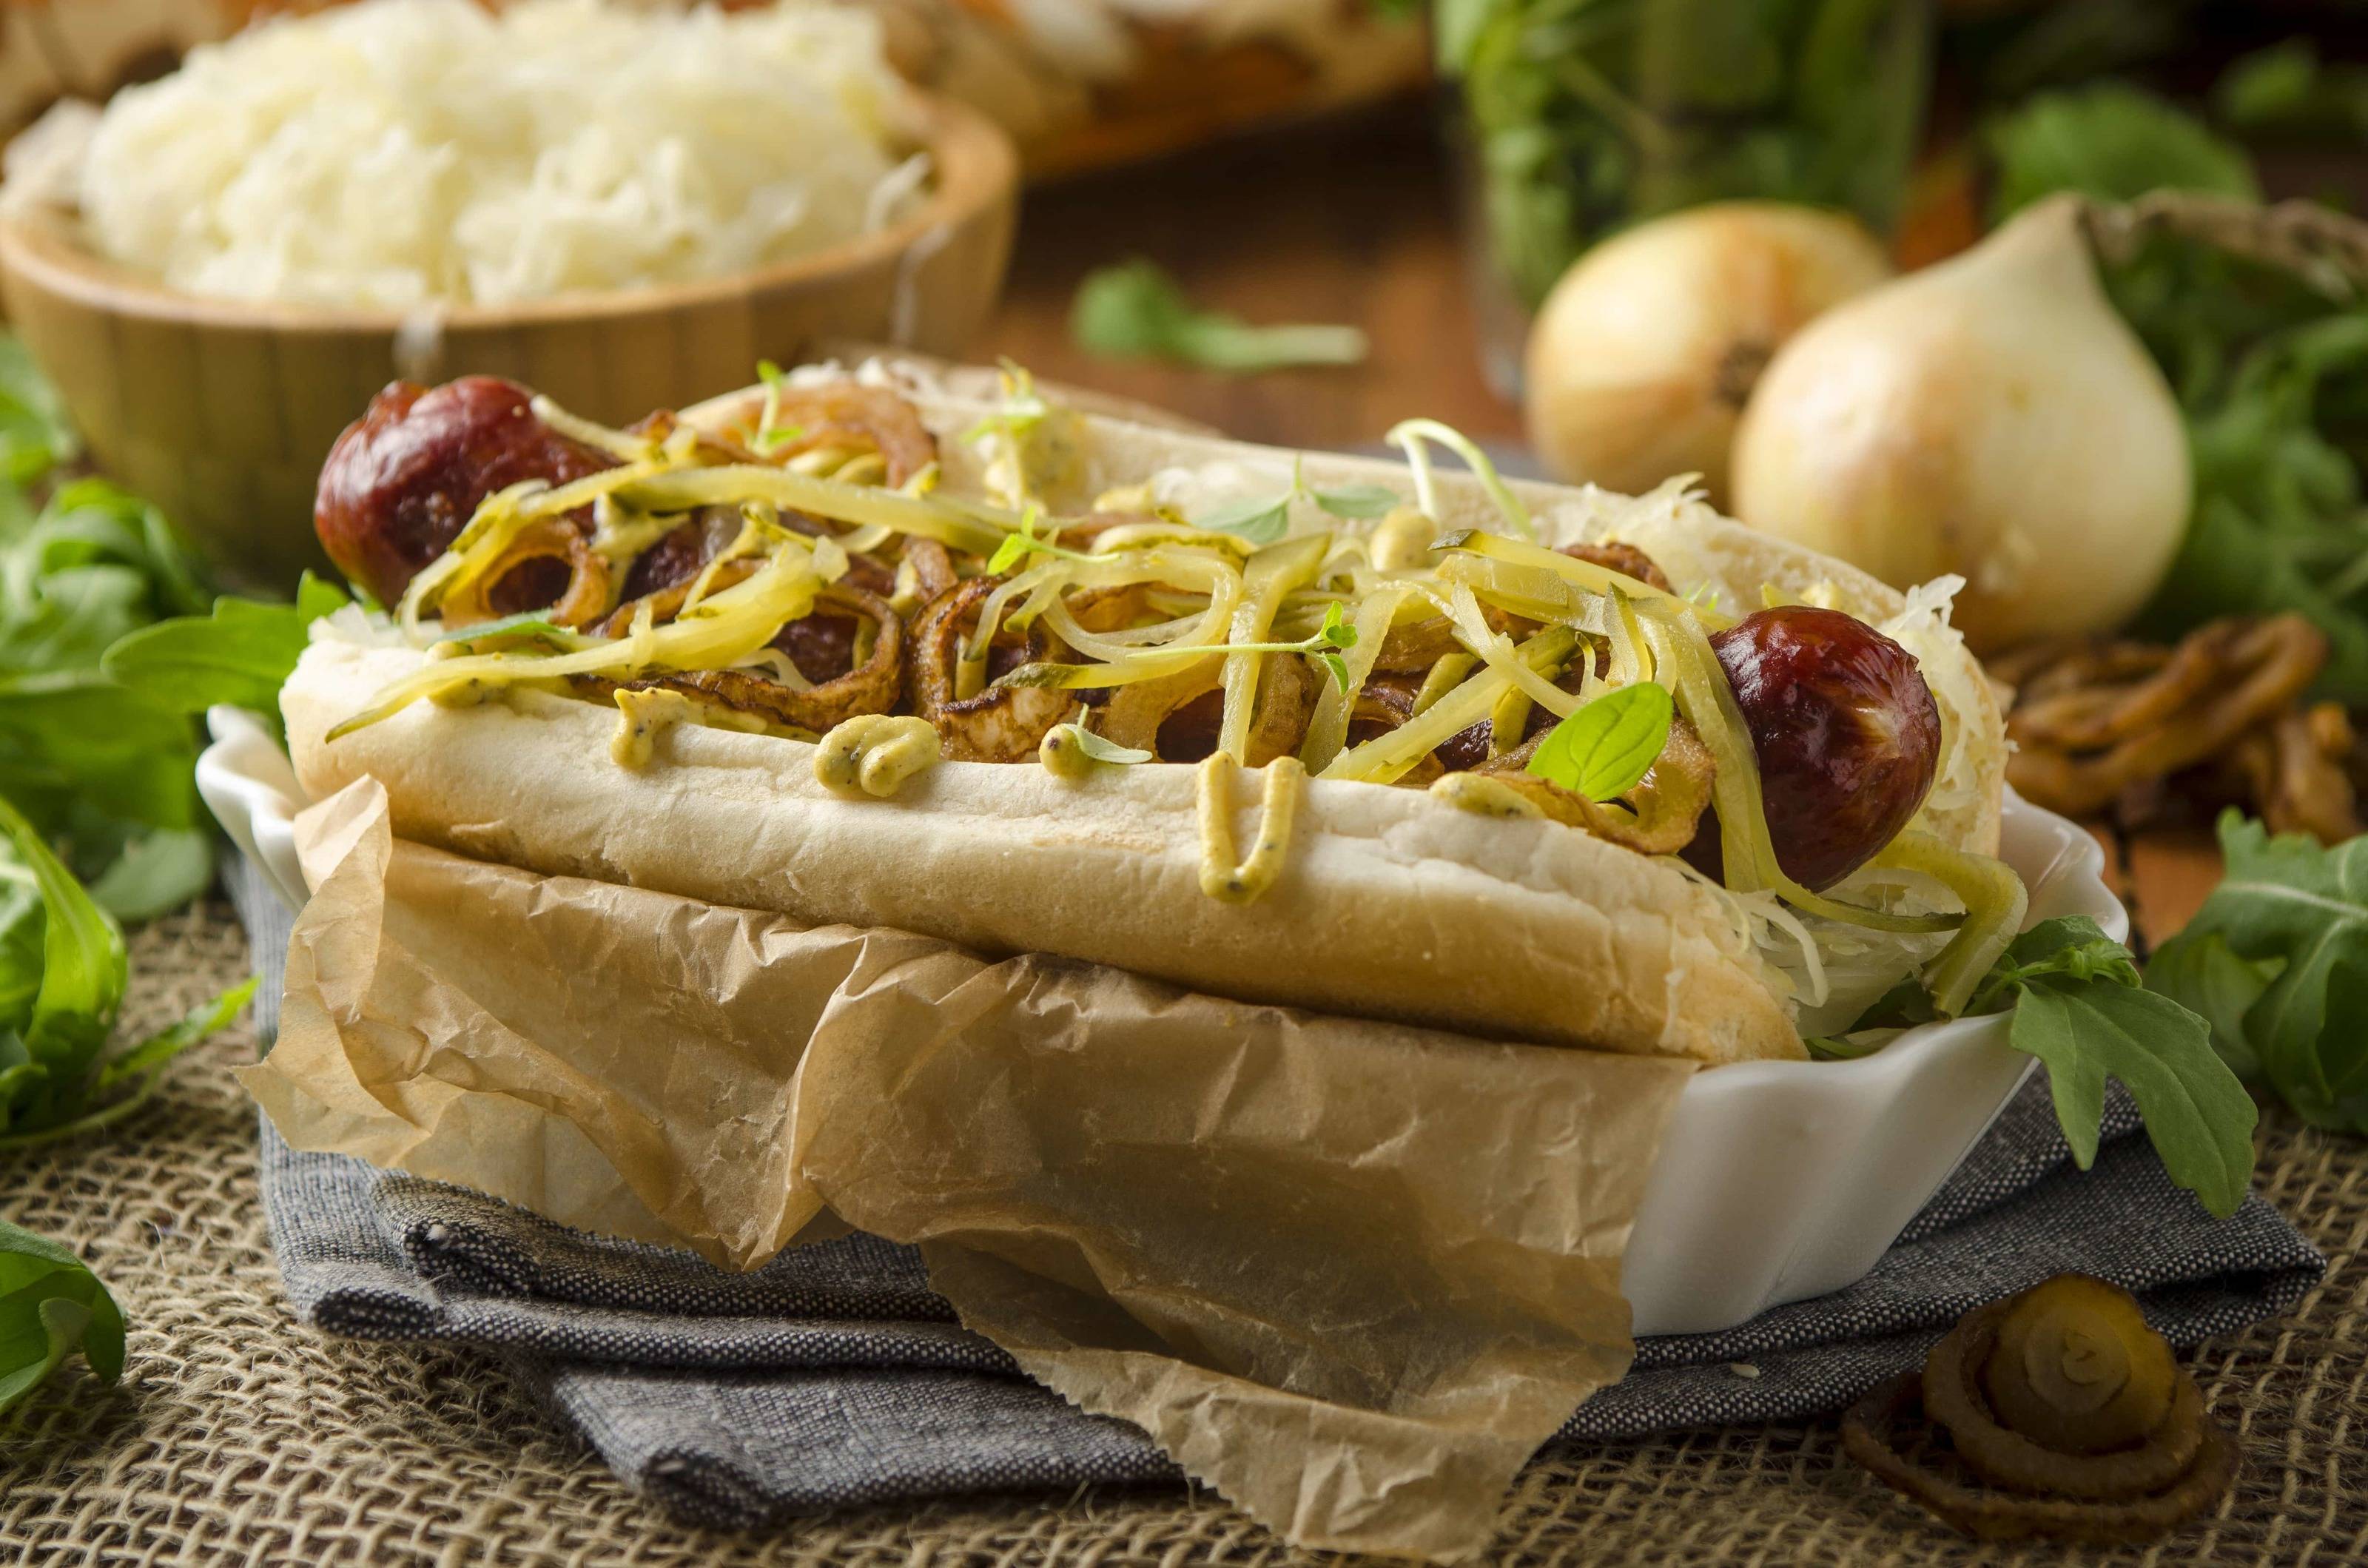 Hot Dog mit Sauerkraut, Mohnsenf und Röstzwiebeln